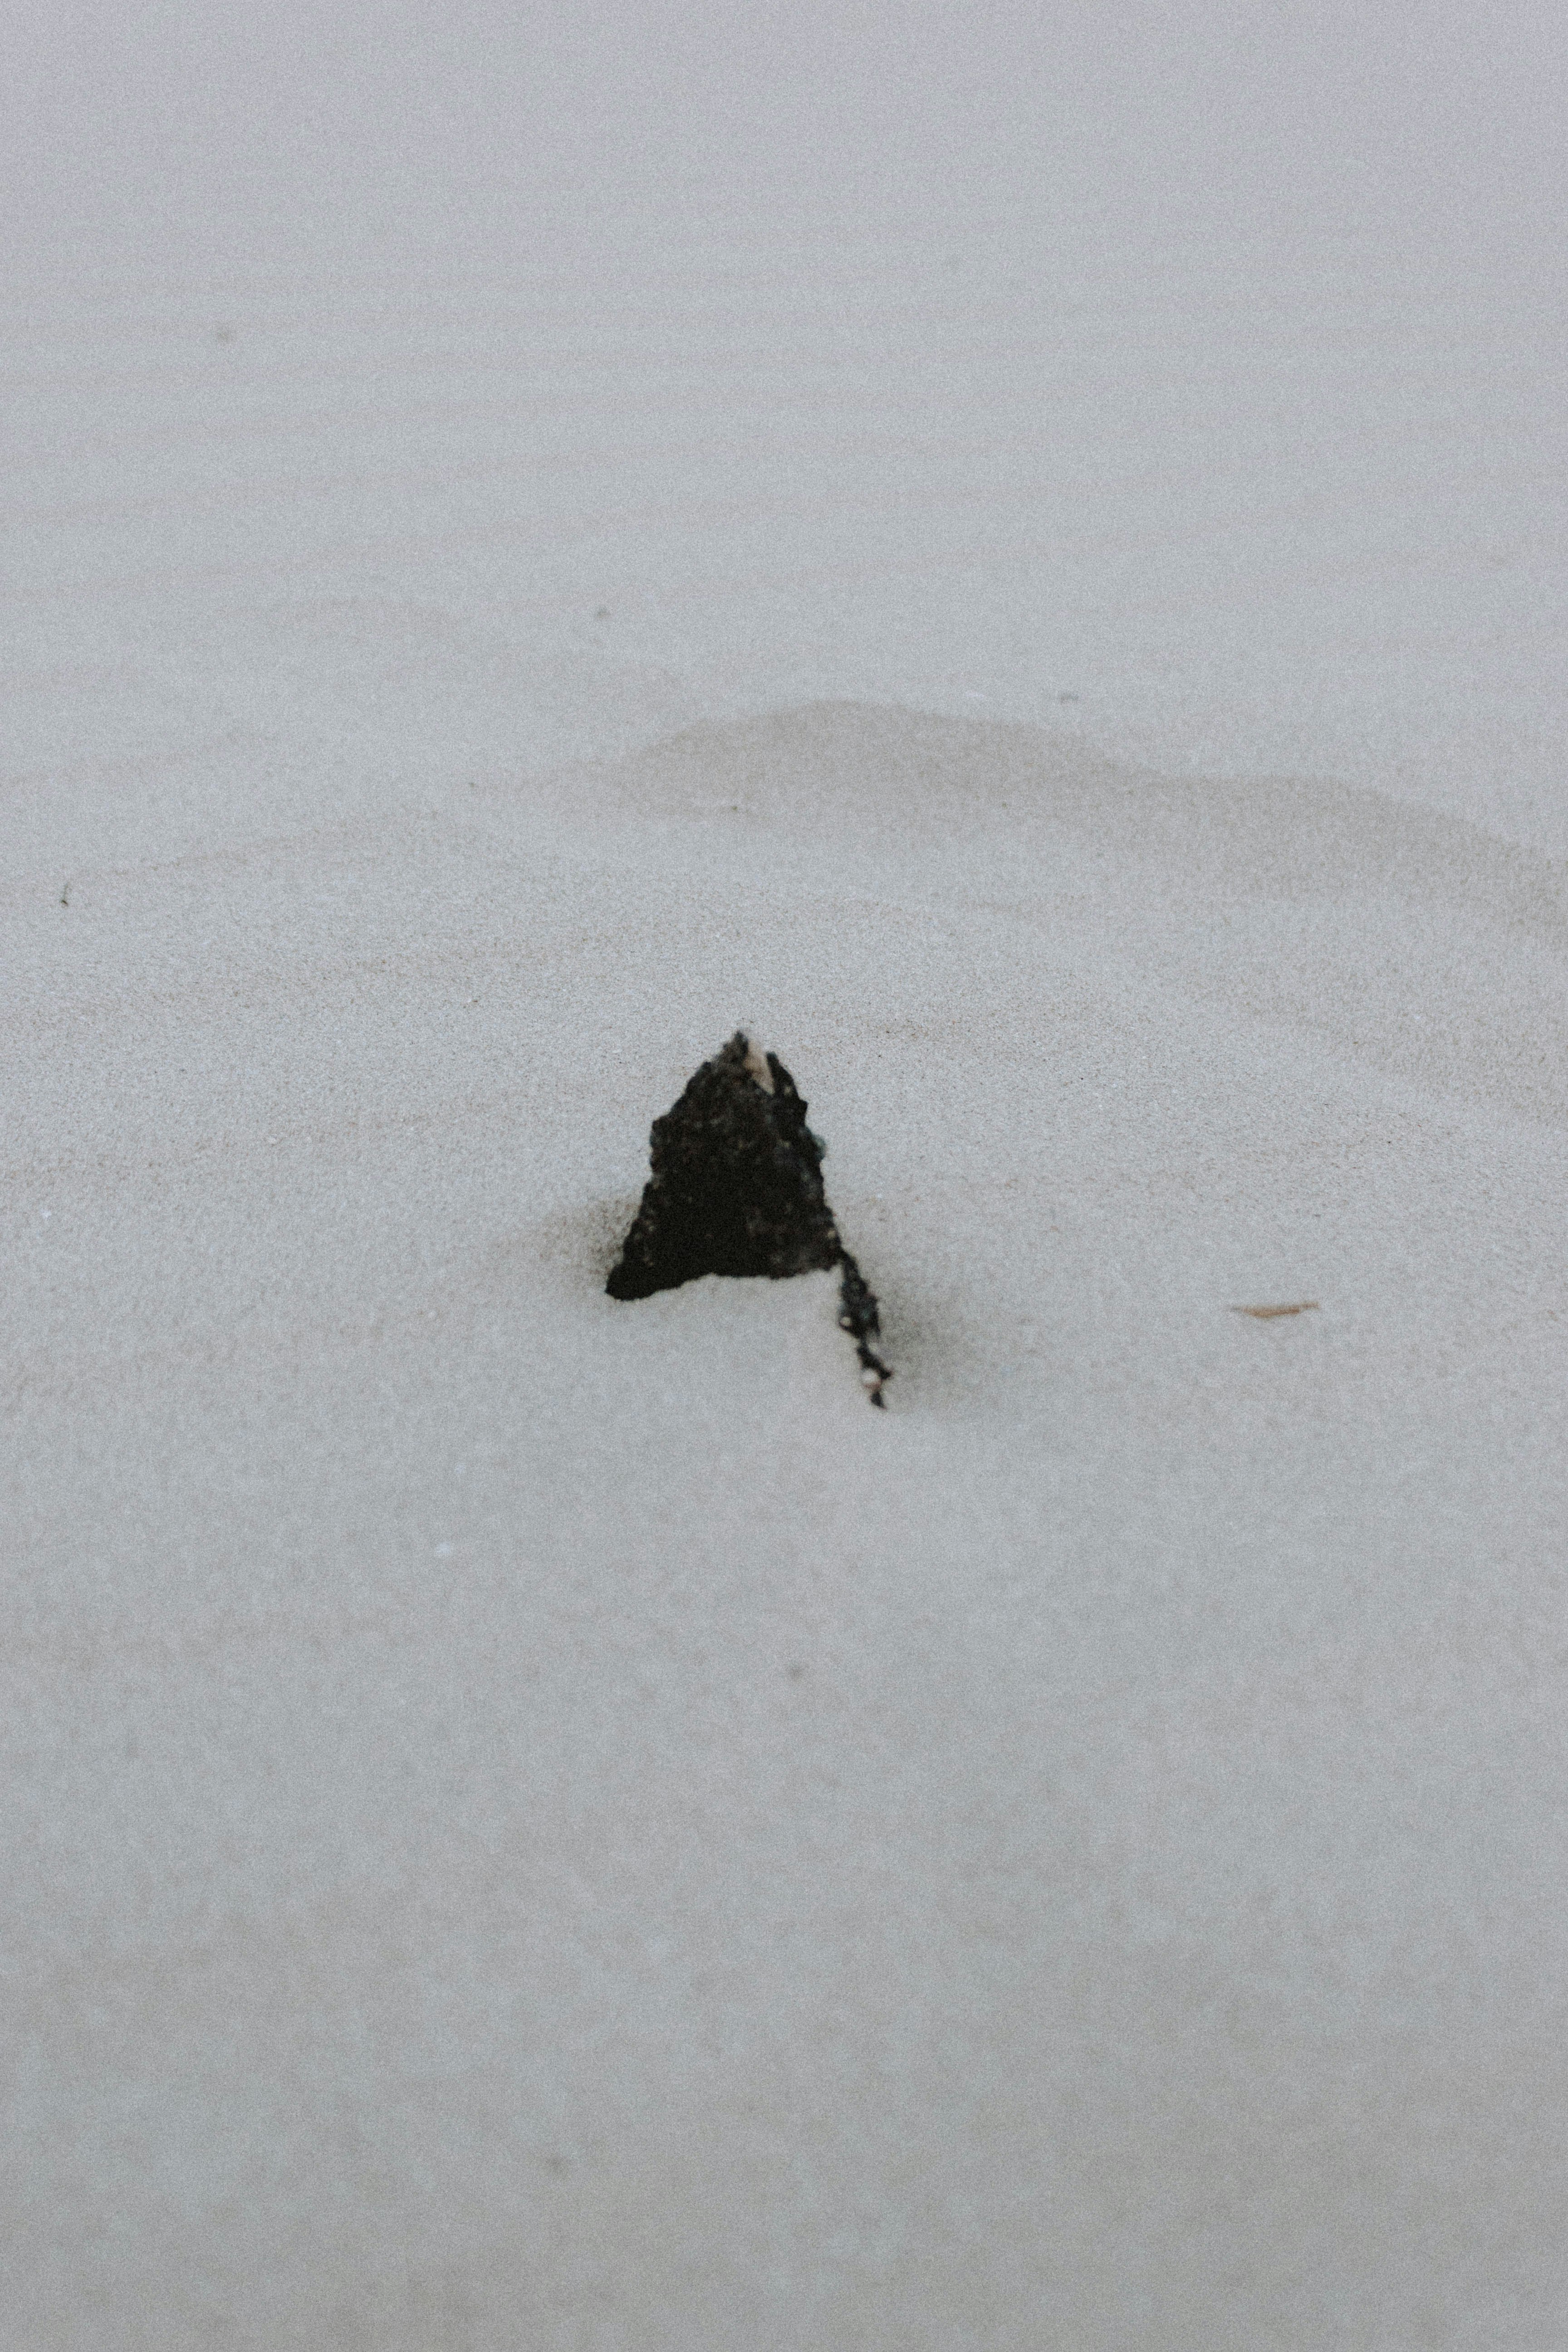 black rock on white snow